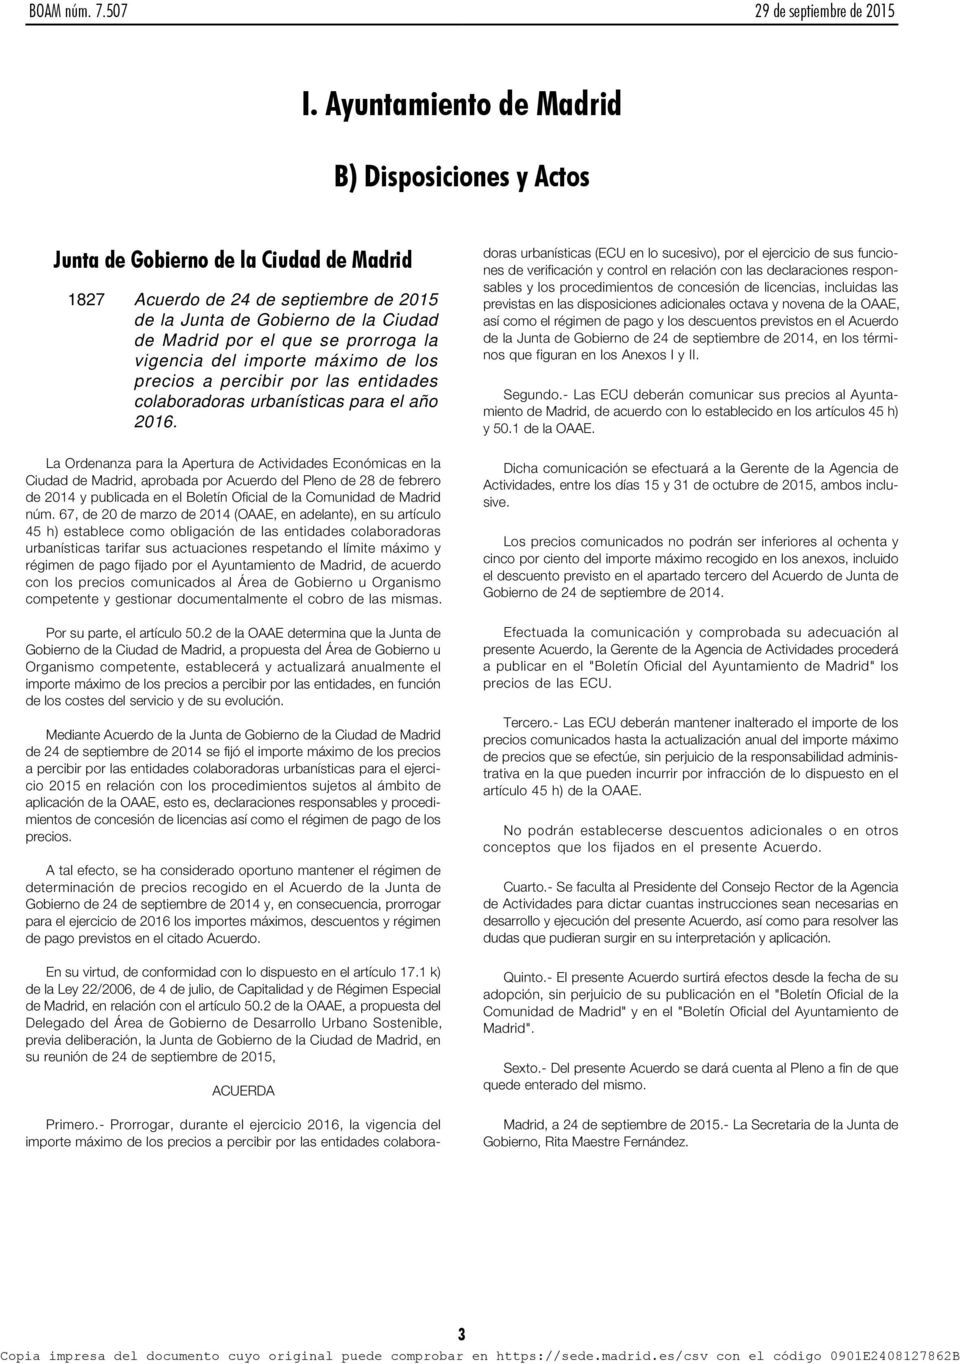 La Ordenanza para la Apertura de Actividades Económicas en la Ciudad de Madrid, aprobada por Acuerdo del Pleno de 28 de febrero de 2014 y publicada en el Boletín Oficial de la Comunidad de Madrid núm.